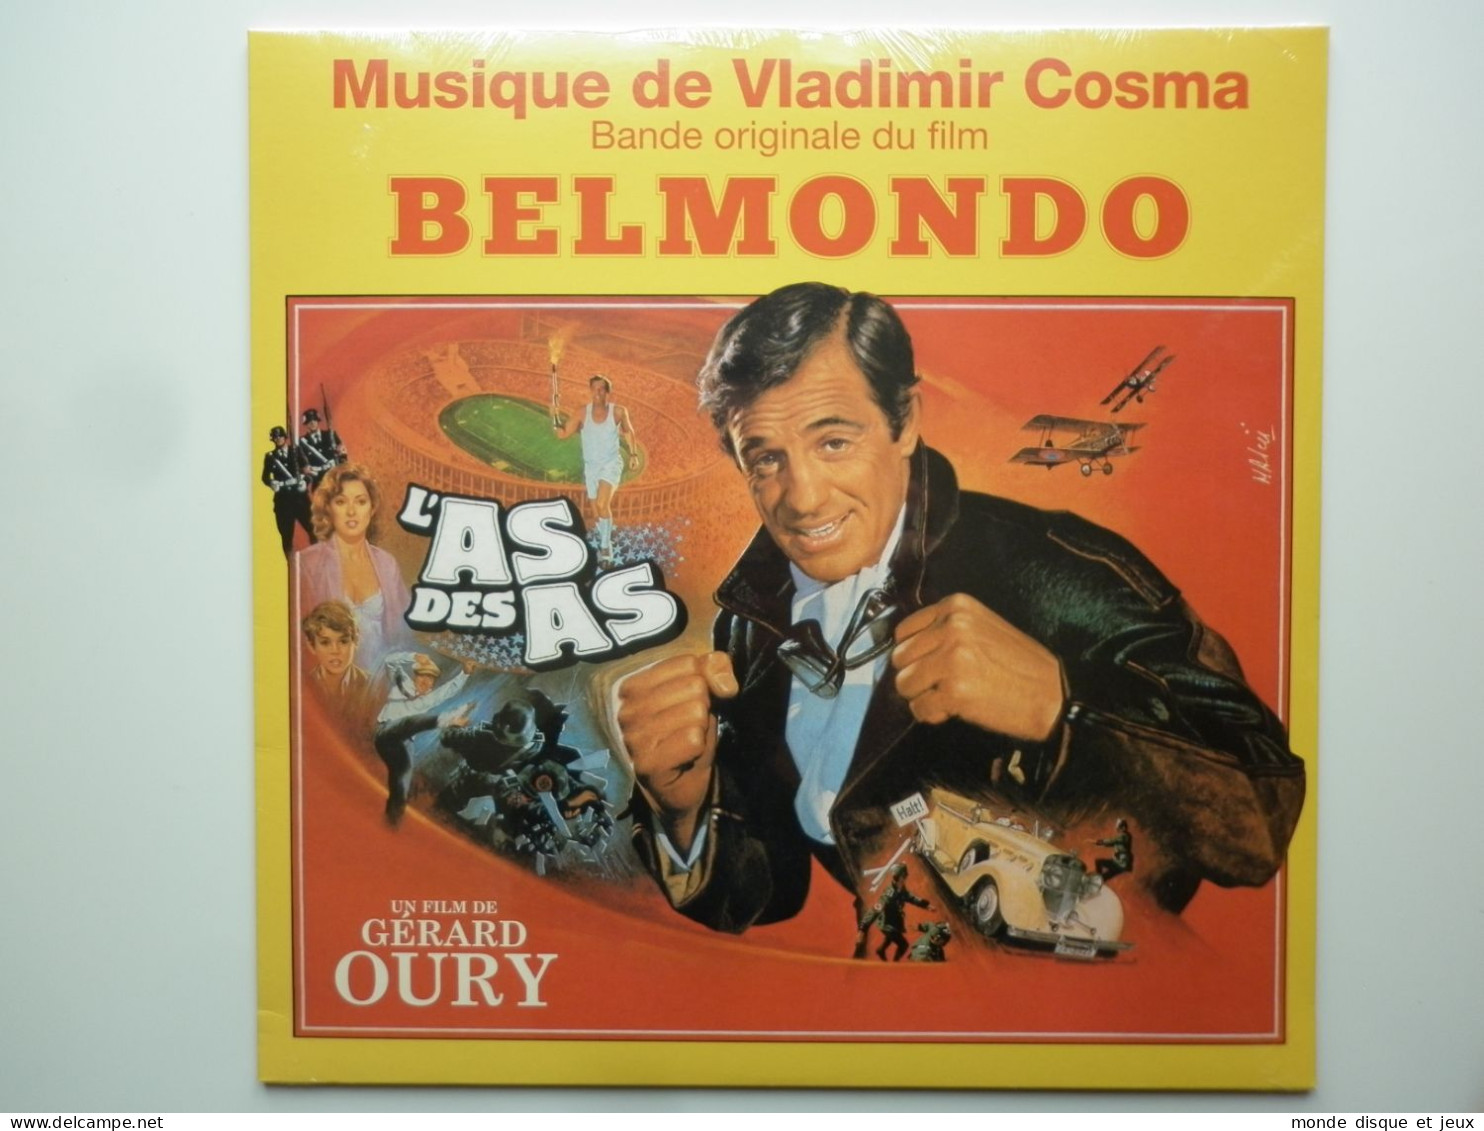 Vladimir Cosma Album 33Tours Vinyle Jean Paul Belmondo L'As Des As Bof - Altri - Francese